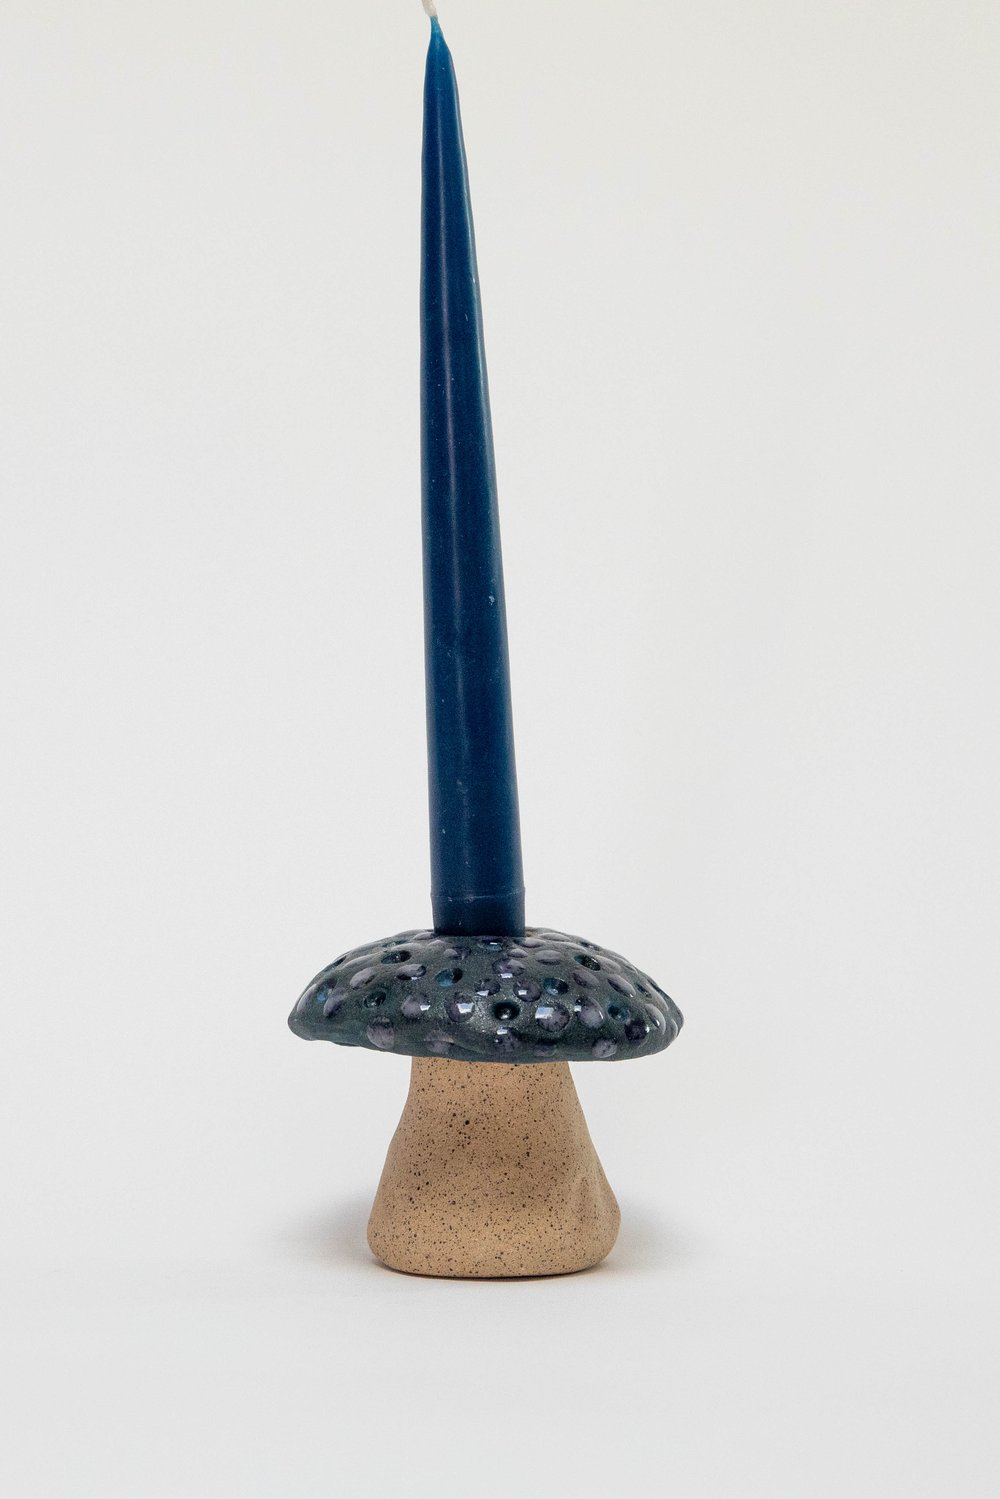 Image of Indigo Mushroom Candle Holder